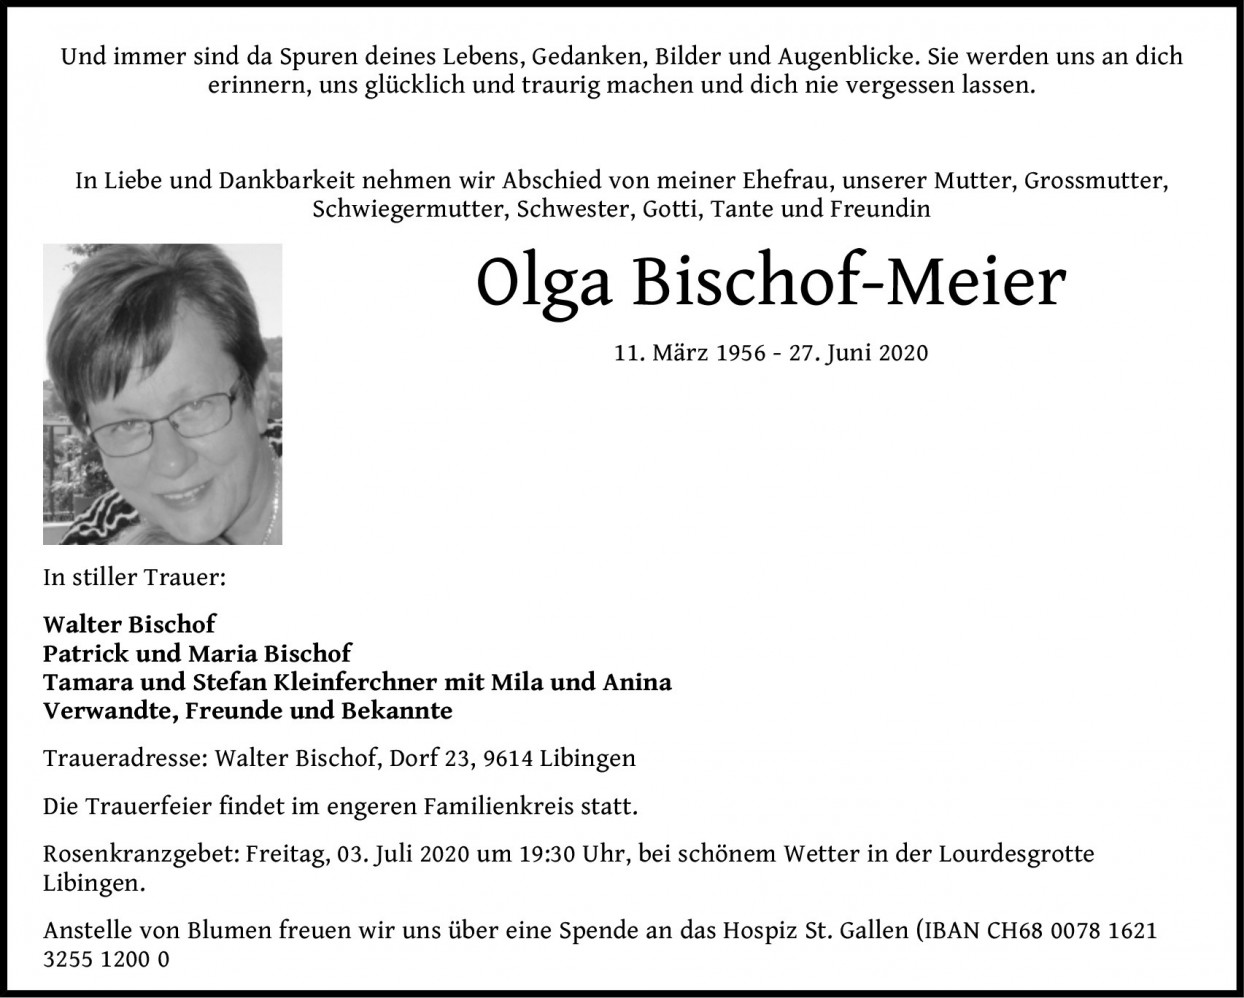 Olga Bischof-Meier